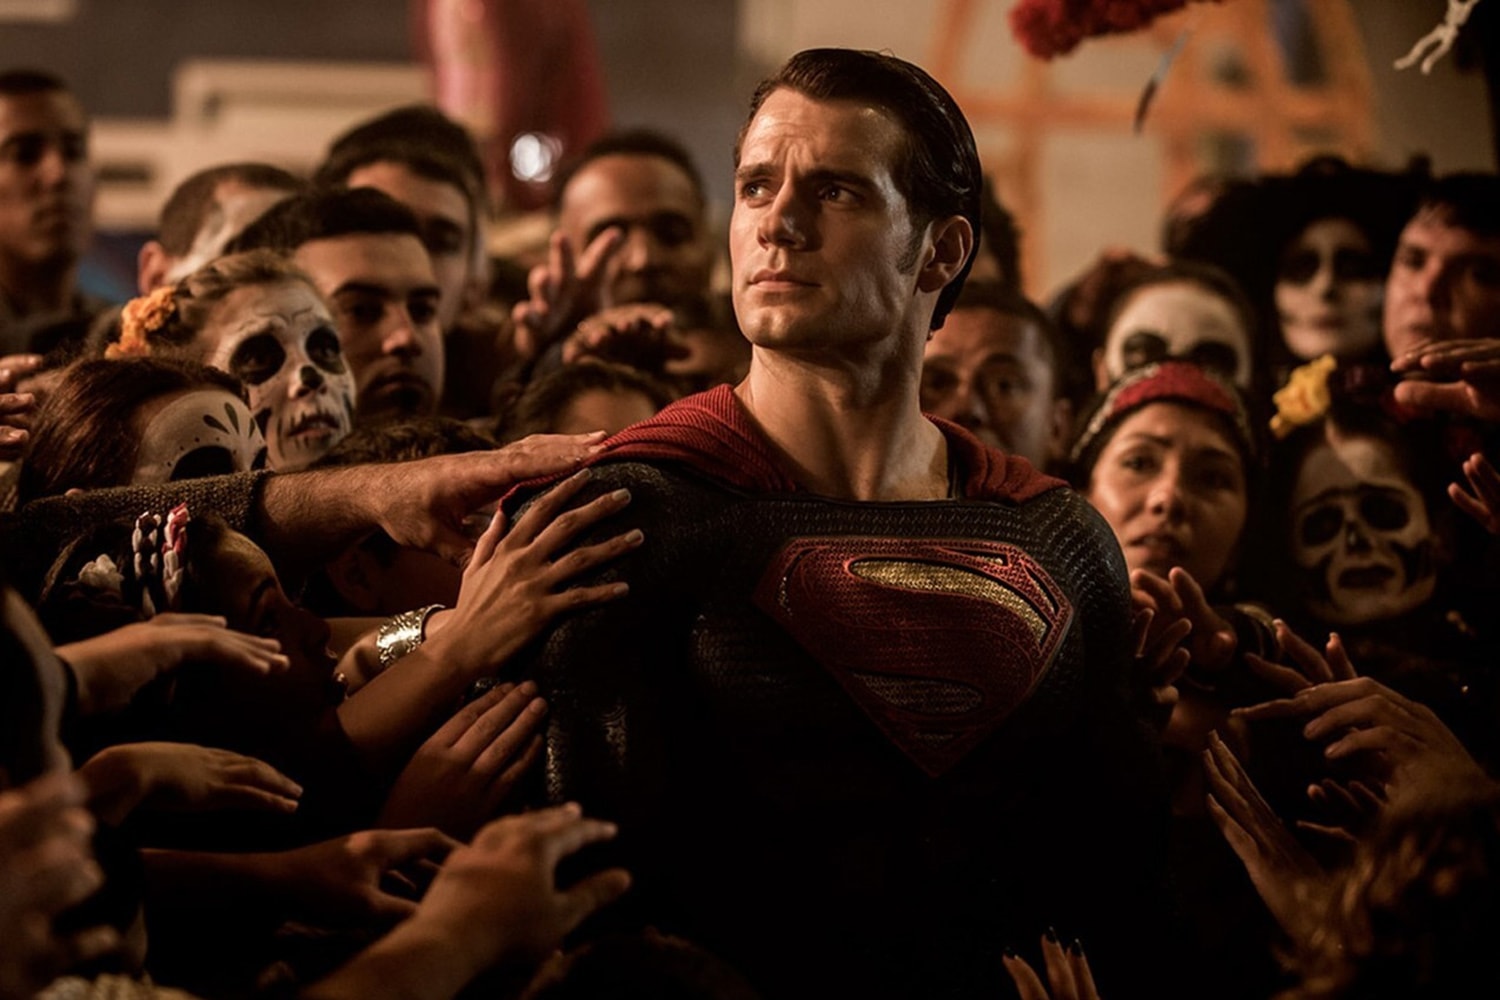 消息稱 DC「超人」Henry Cavill 有望轉投 Marvel 陣營